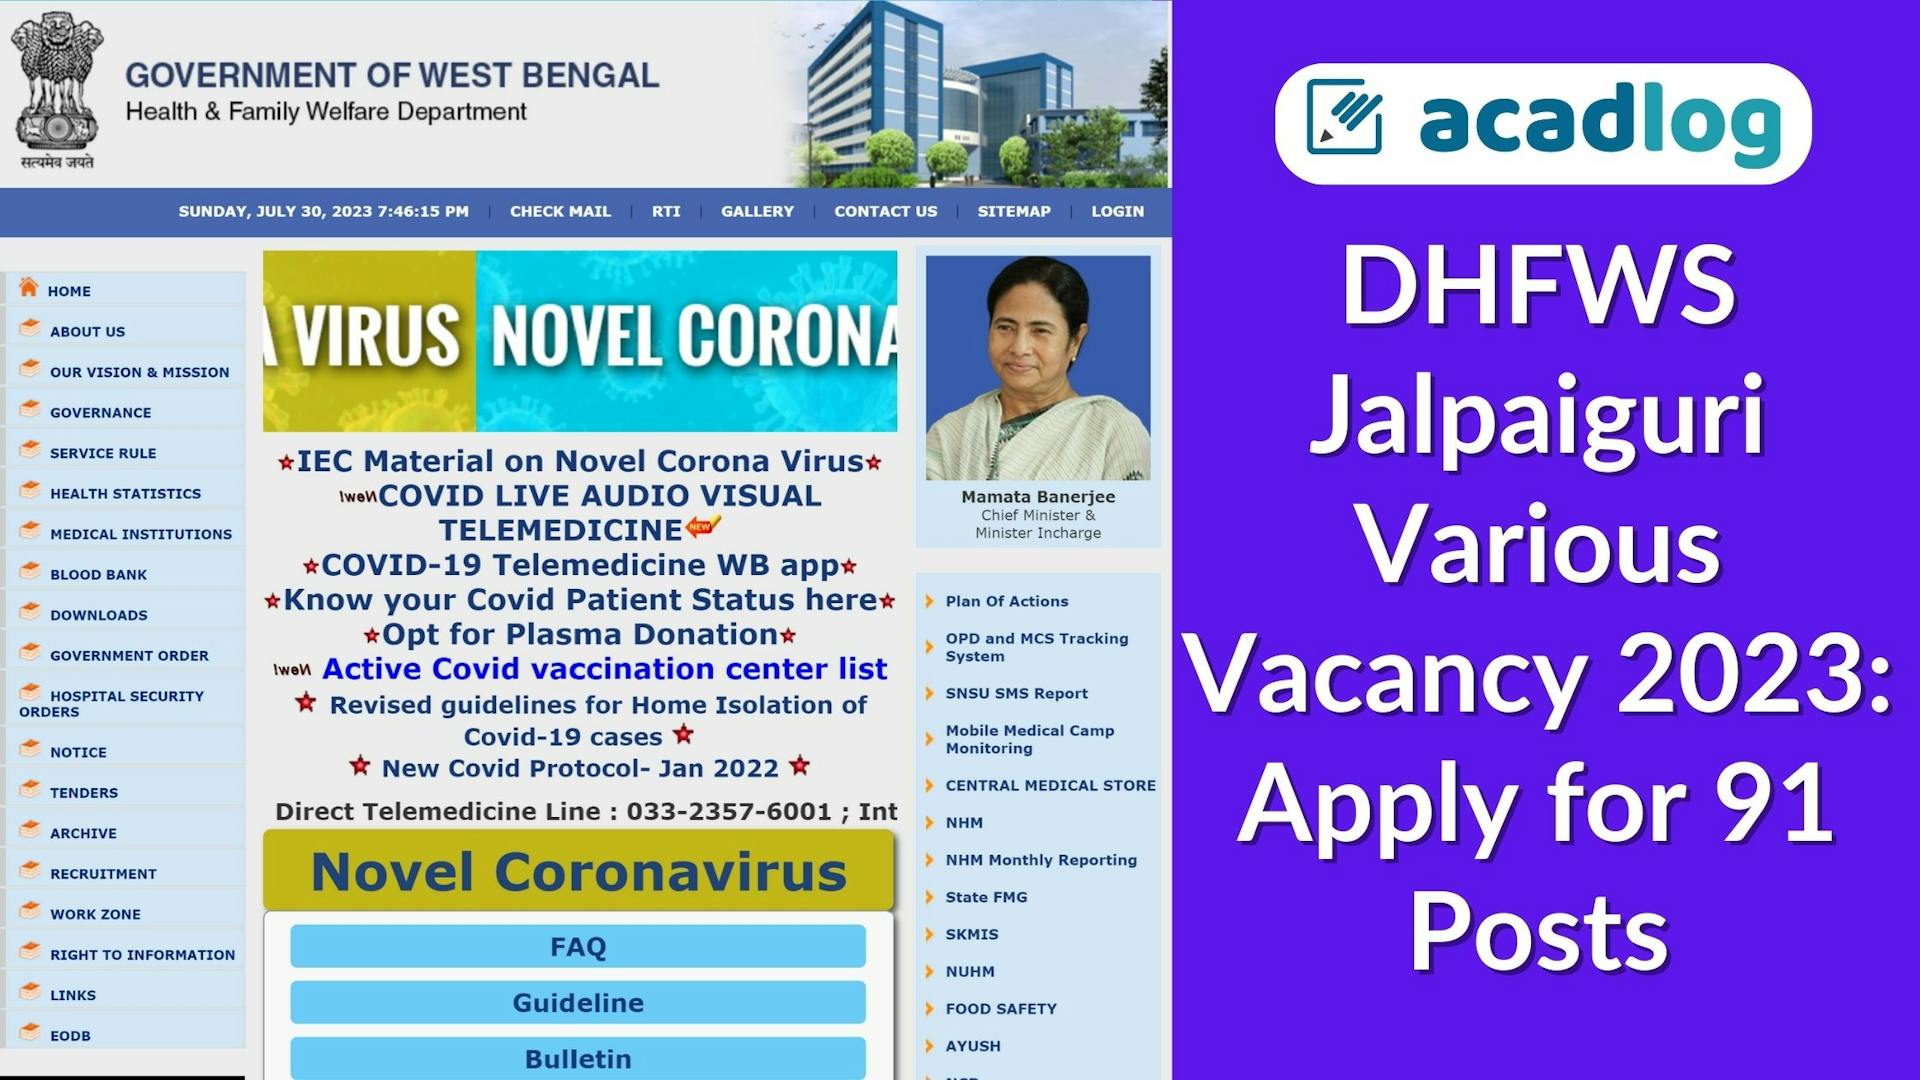 DHFWS Jalpaiguri Various Vacancy 2023: Apply for 91 Posts